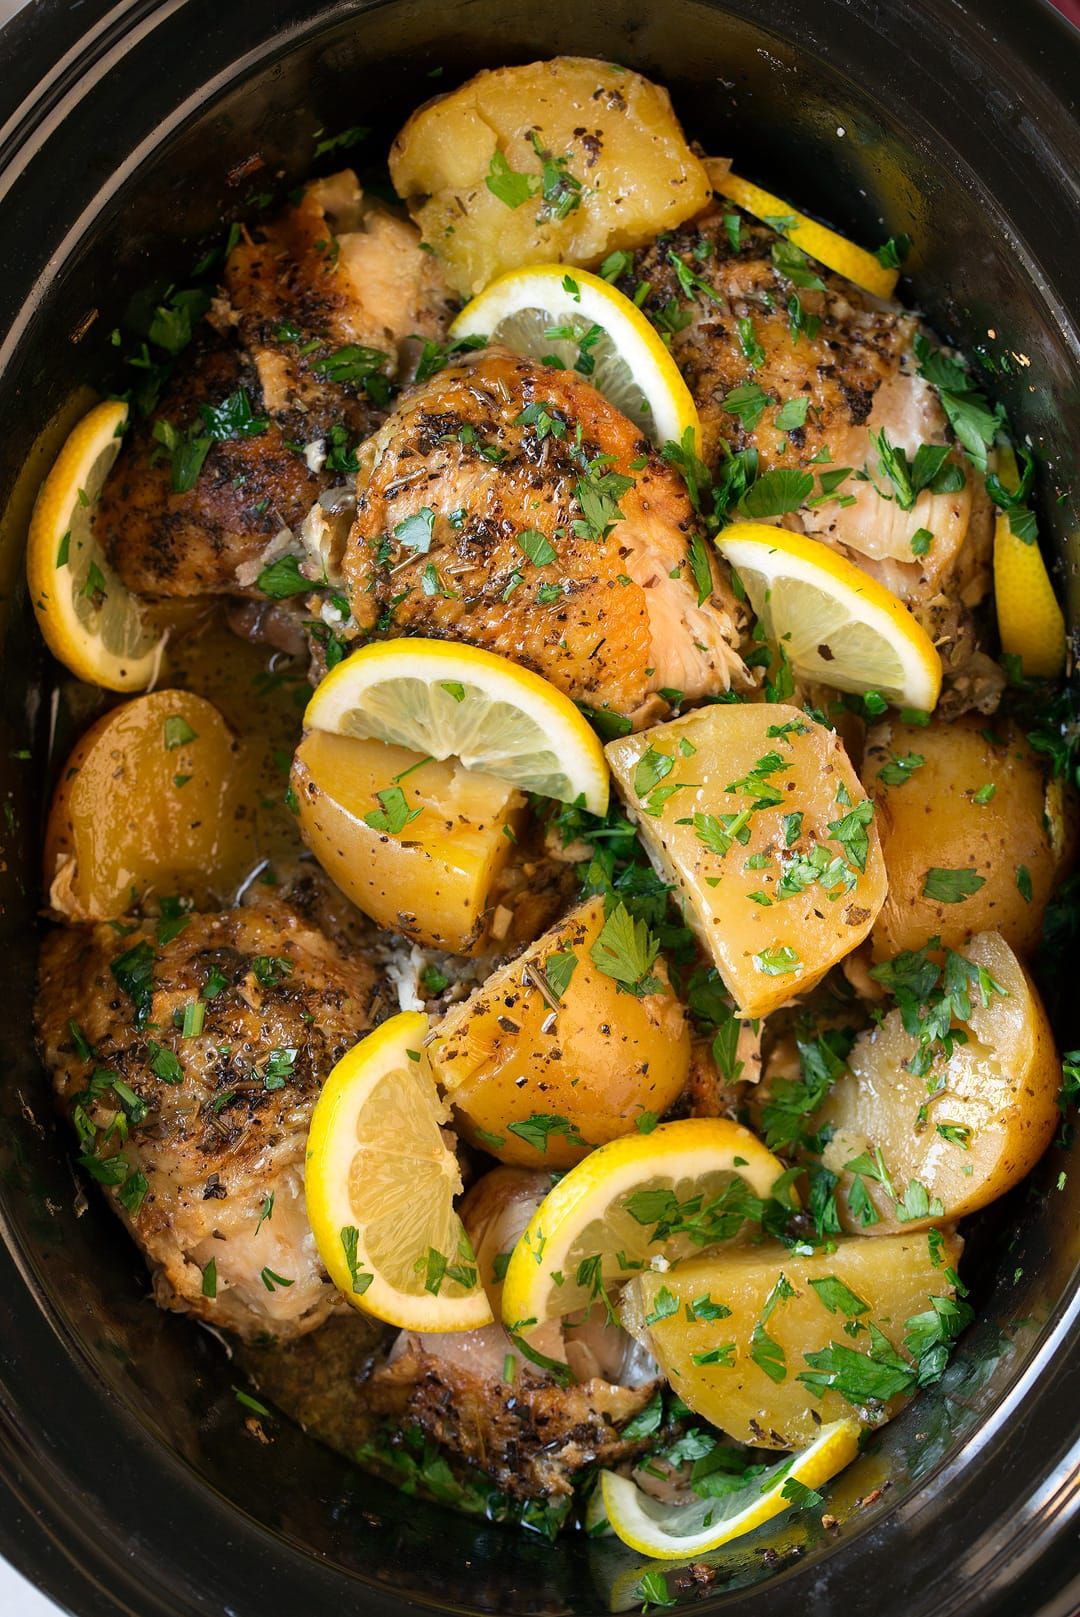 https://hips.hearstapps.com/hmg-prod/images/easy-slow-cooker-chicken-thigh-recipes-greek-lemon-1577202191.jpg